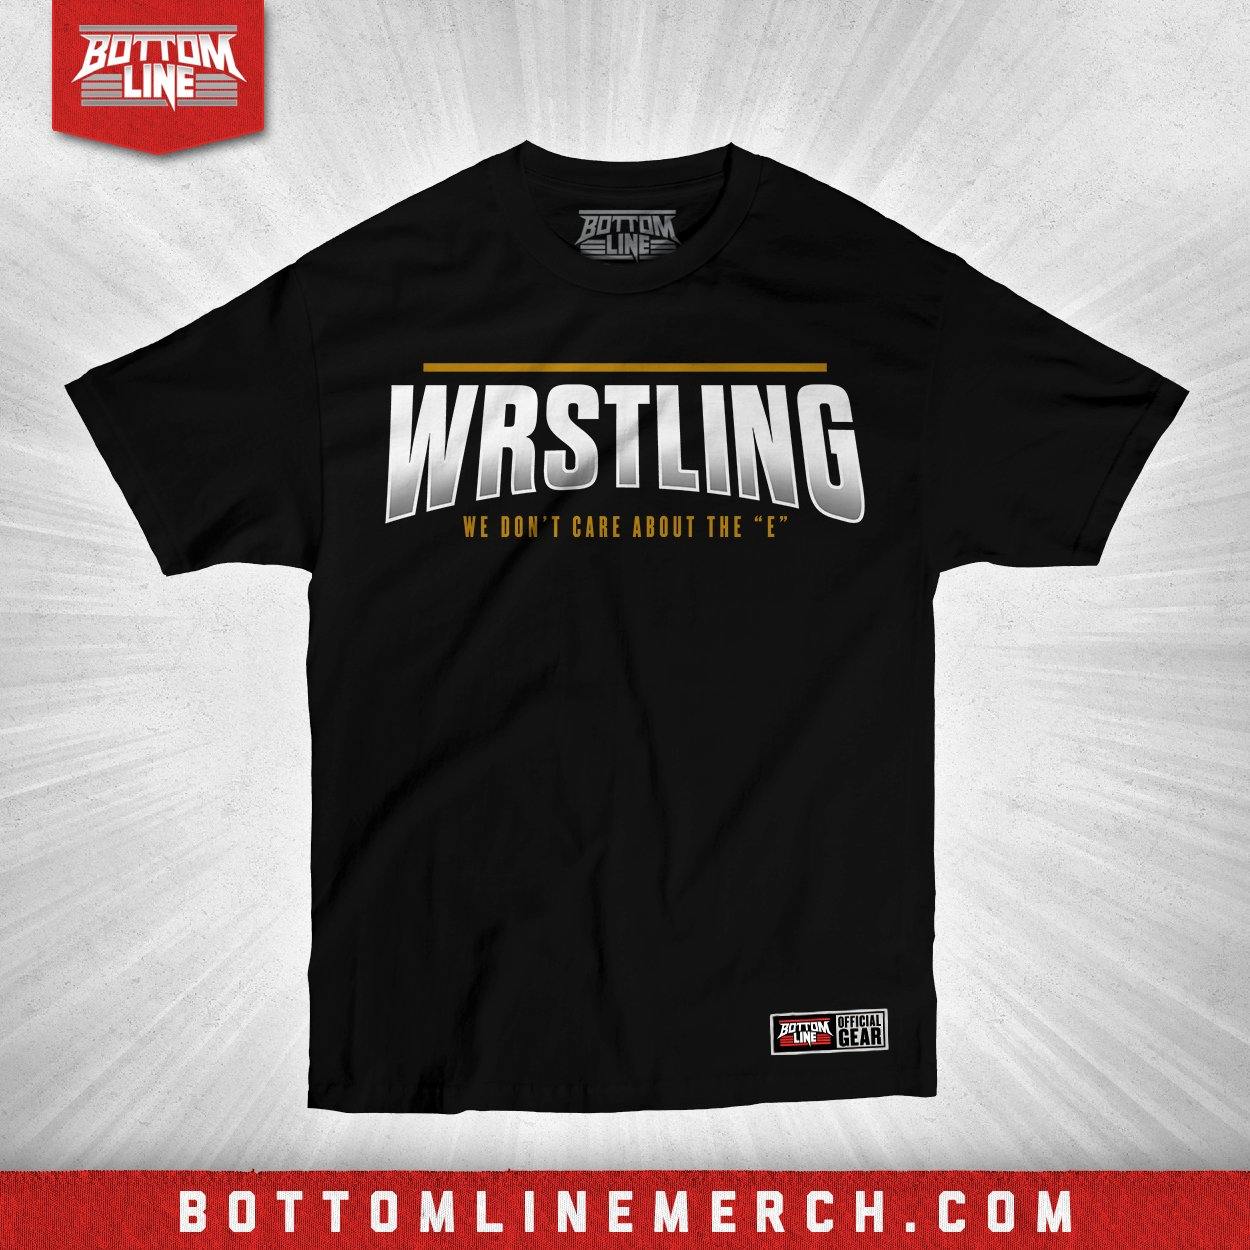 Buy Now – Wrstling "Don't Care" Shirt – Wrestler & Wrestling Merch – Bottom Line